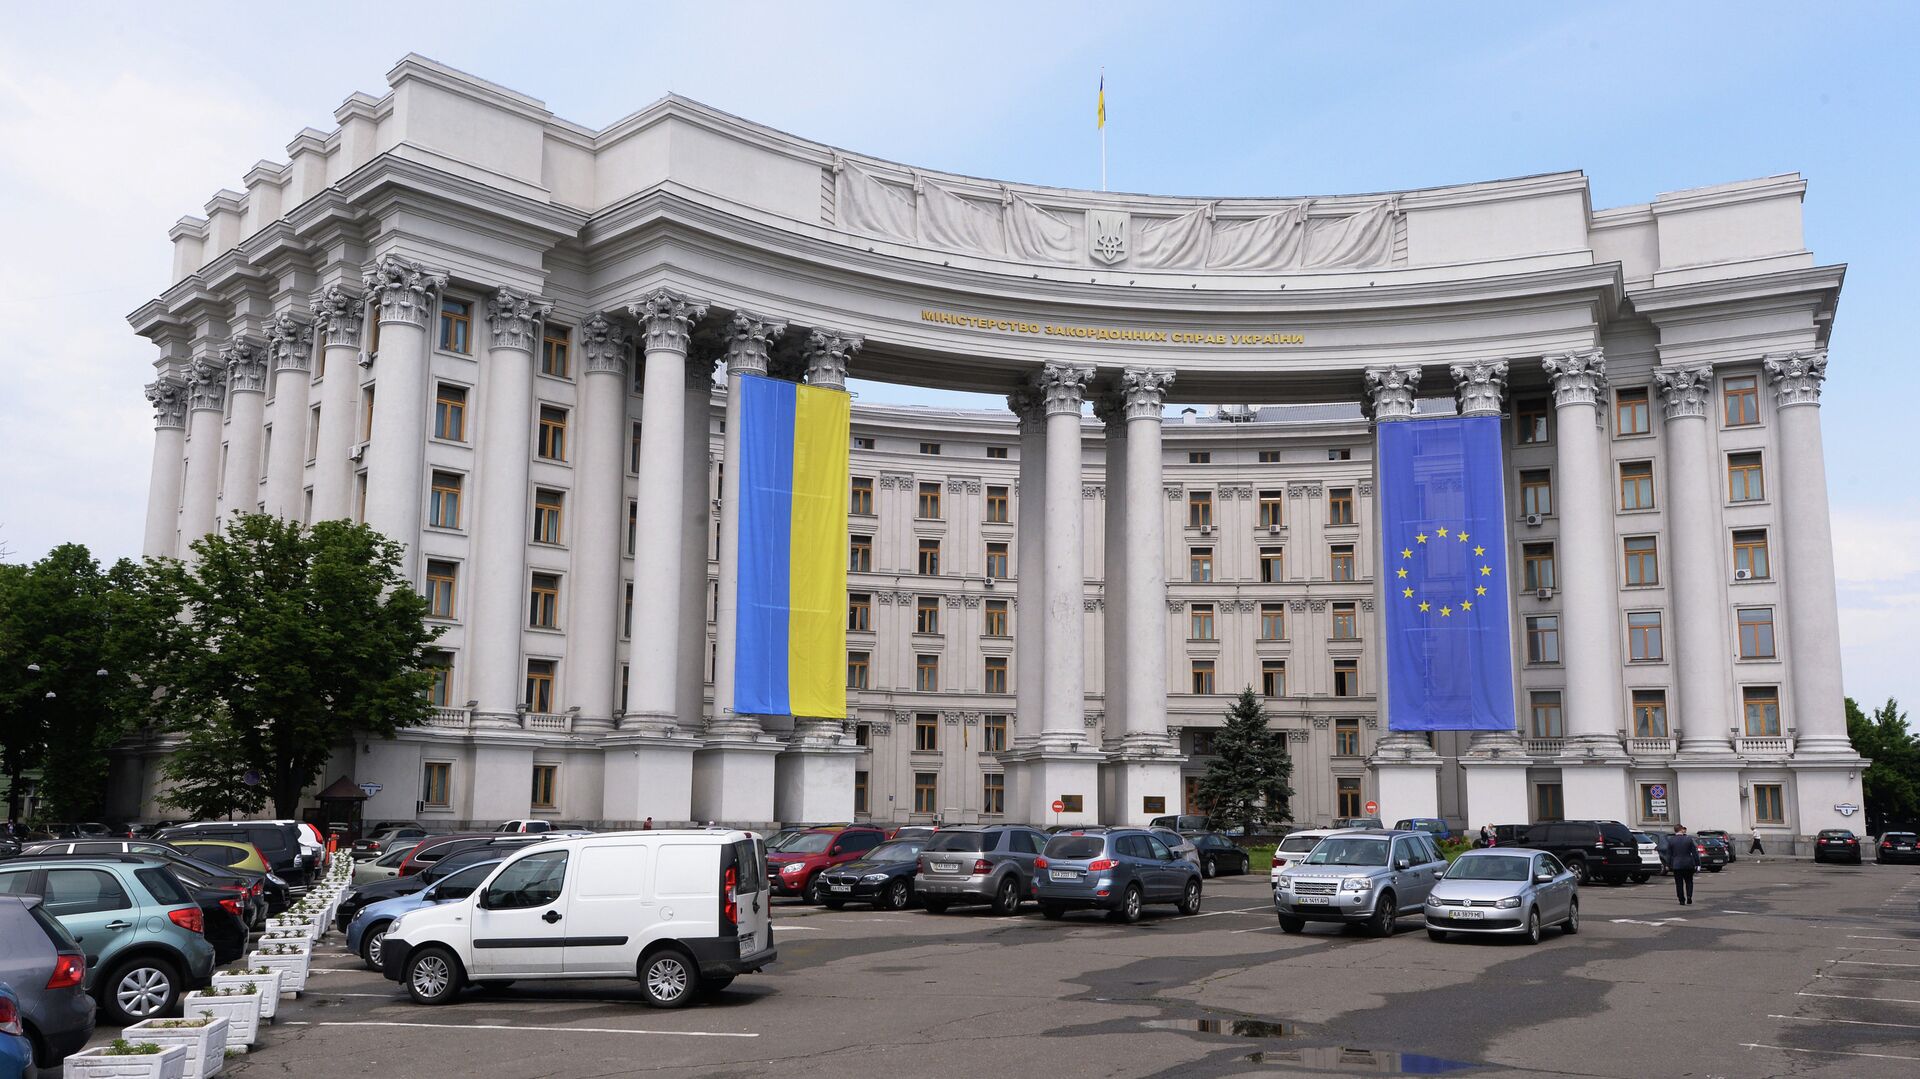 Здание МИДа Украины с национальным флагом Украины и флагом Евросоюза на фасаде - РИА Новости, 1920, 09.06.2021